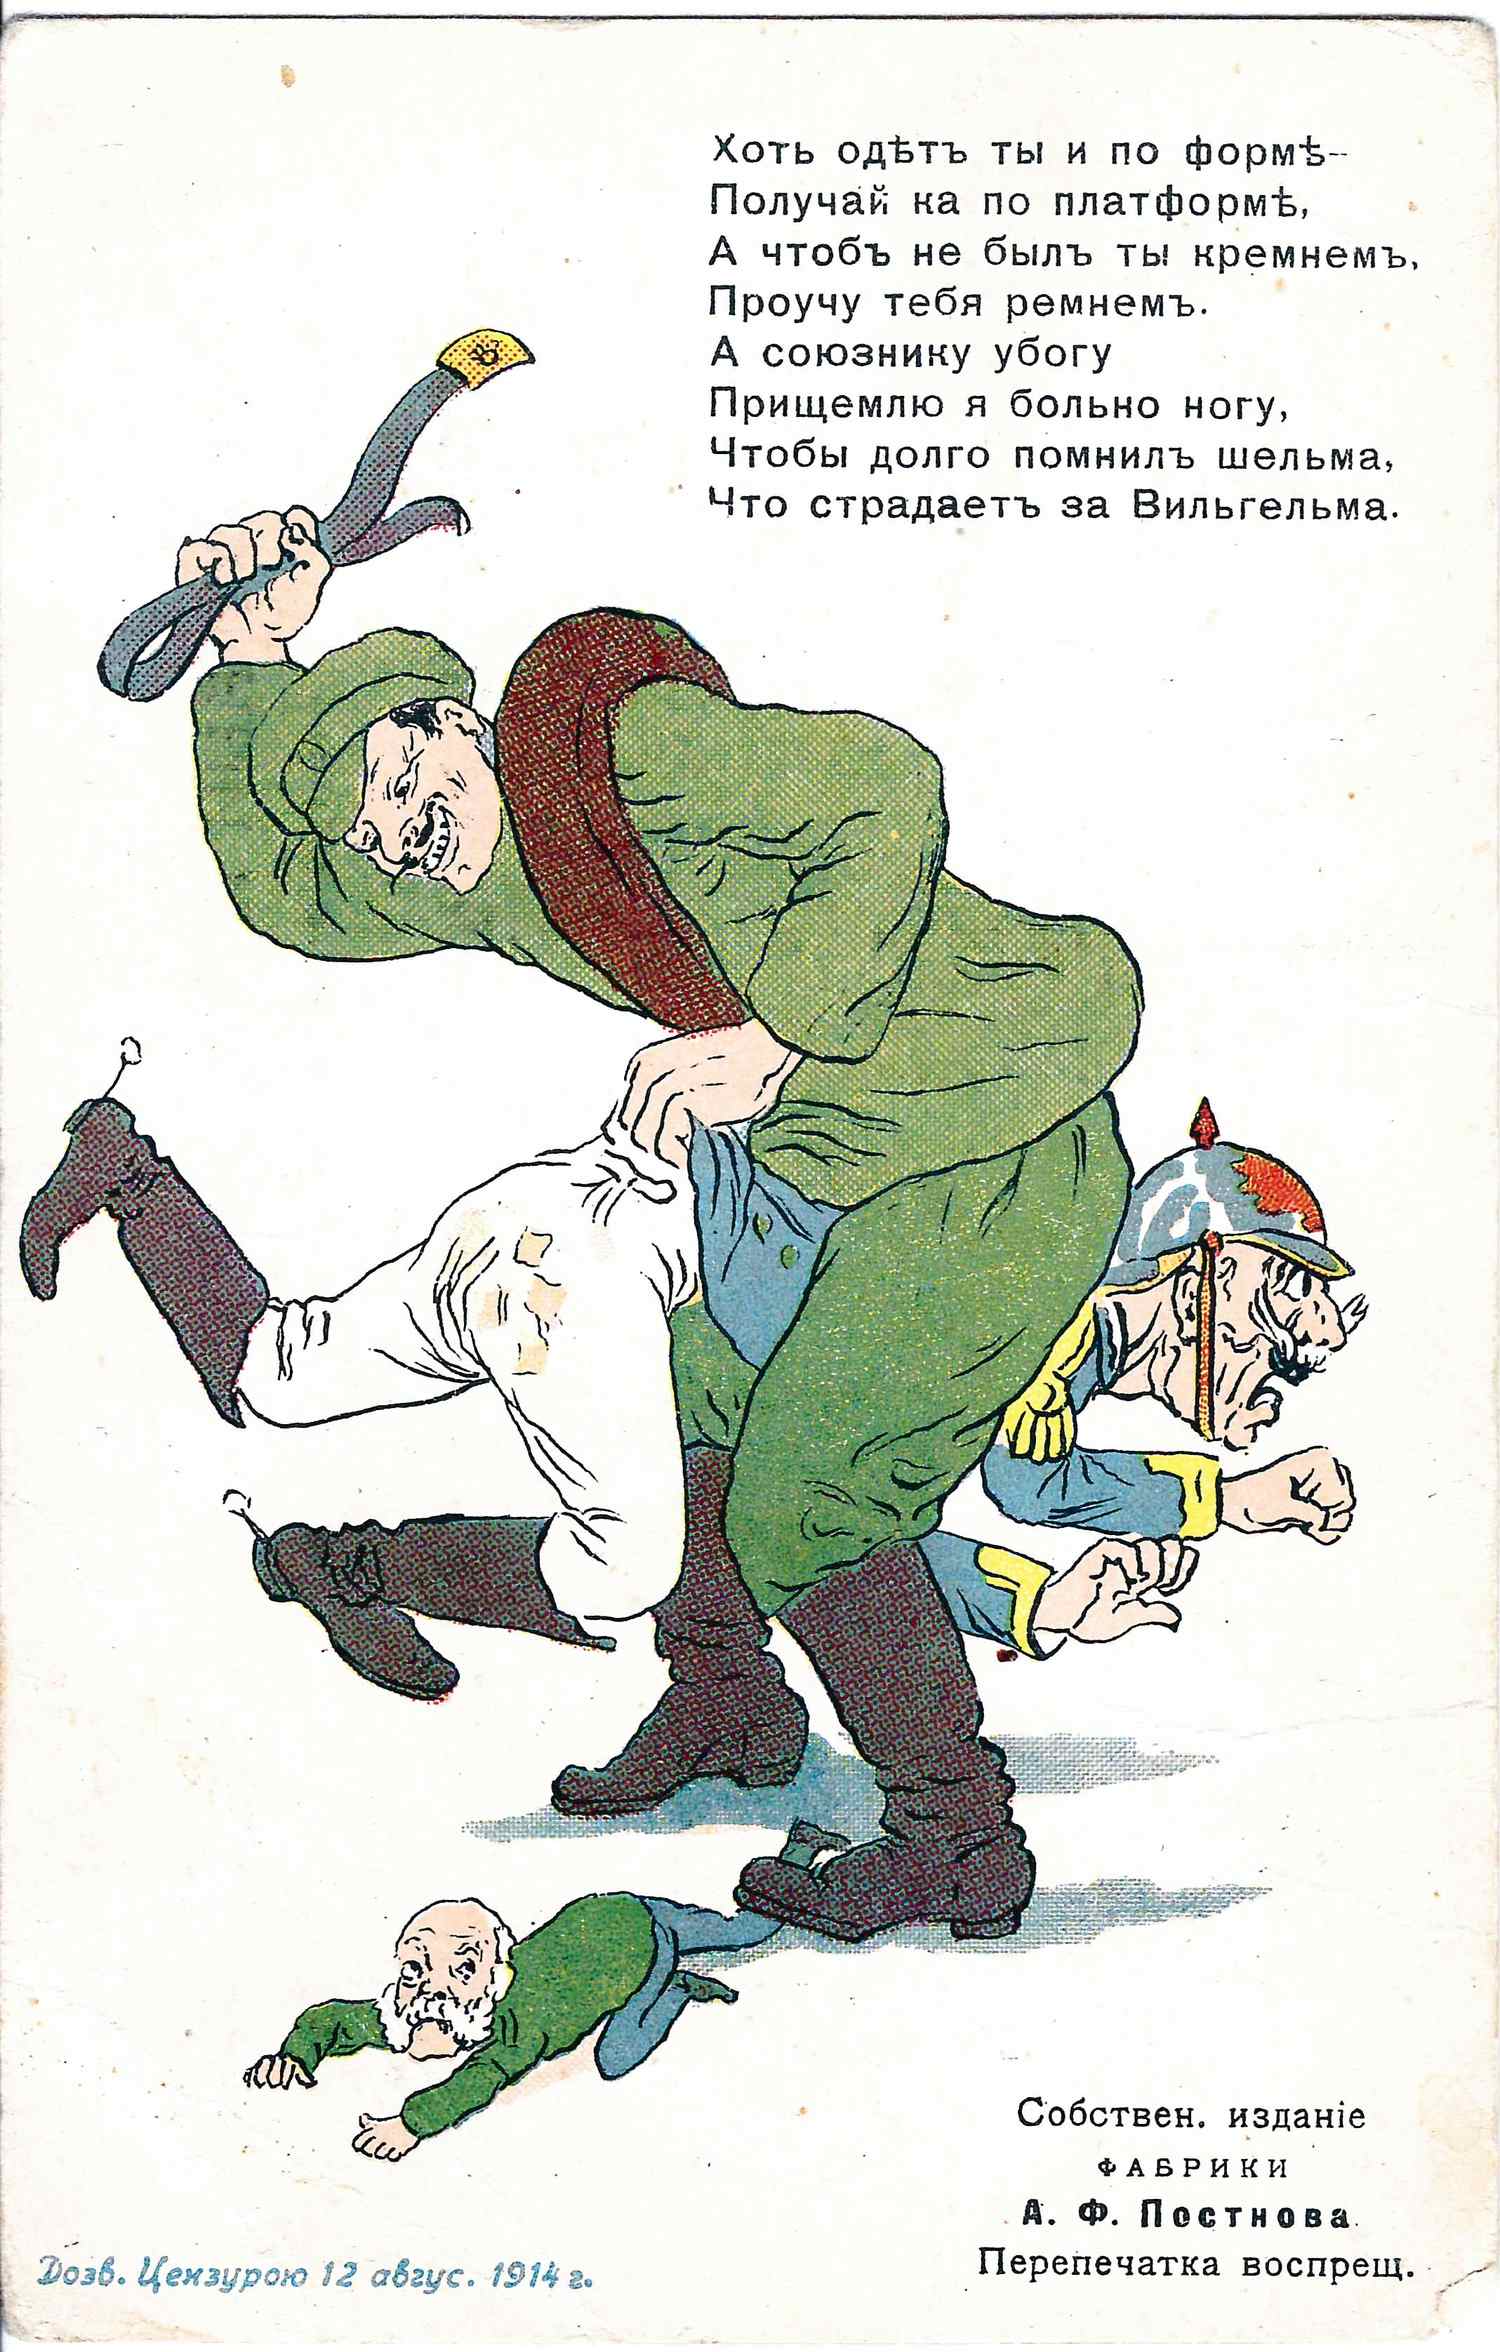 Открытка «Хоть одет ты и по форме...» Издание А.Ф. Постнова, 1914.